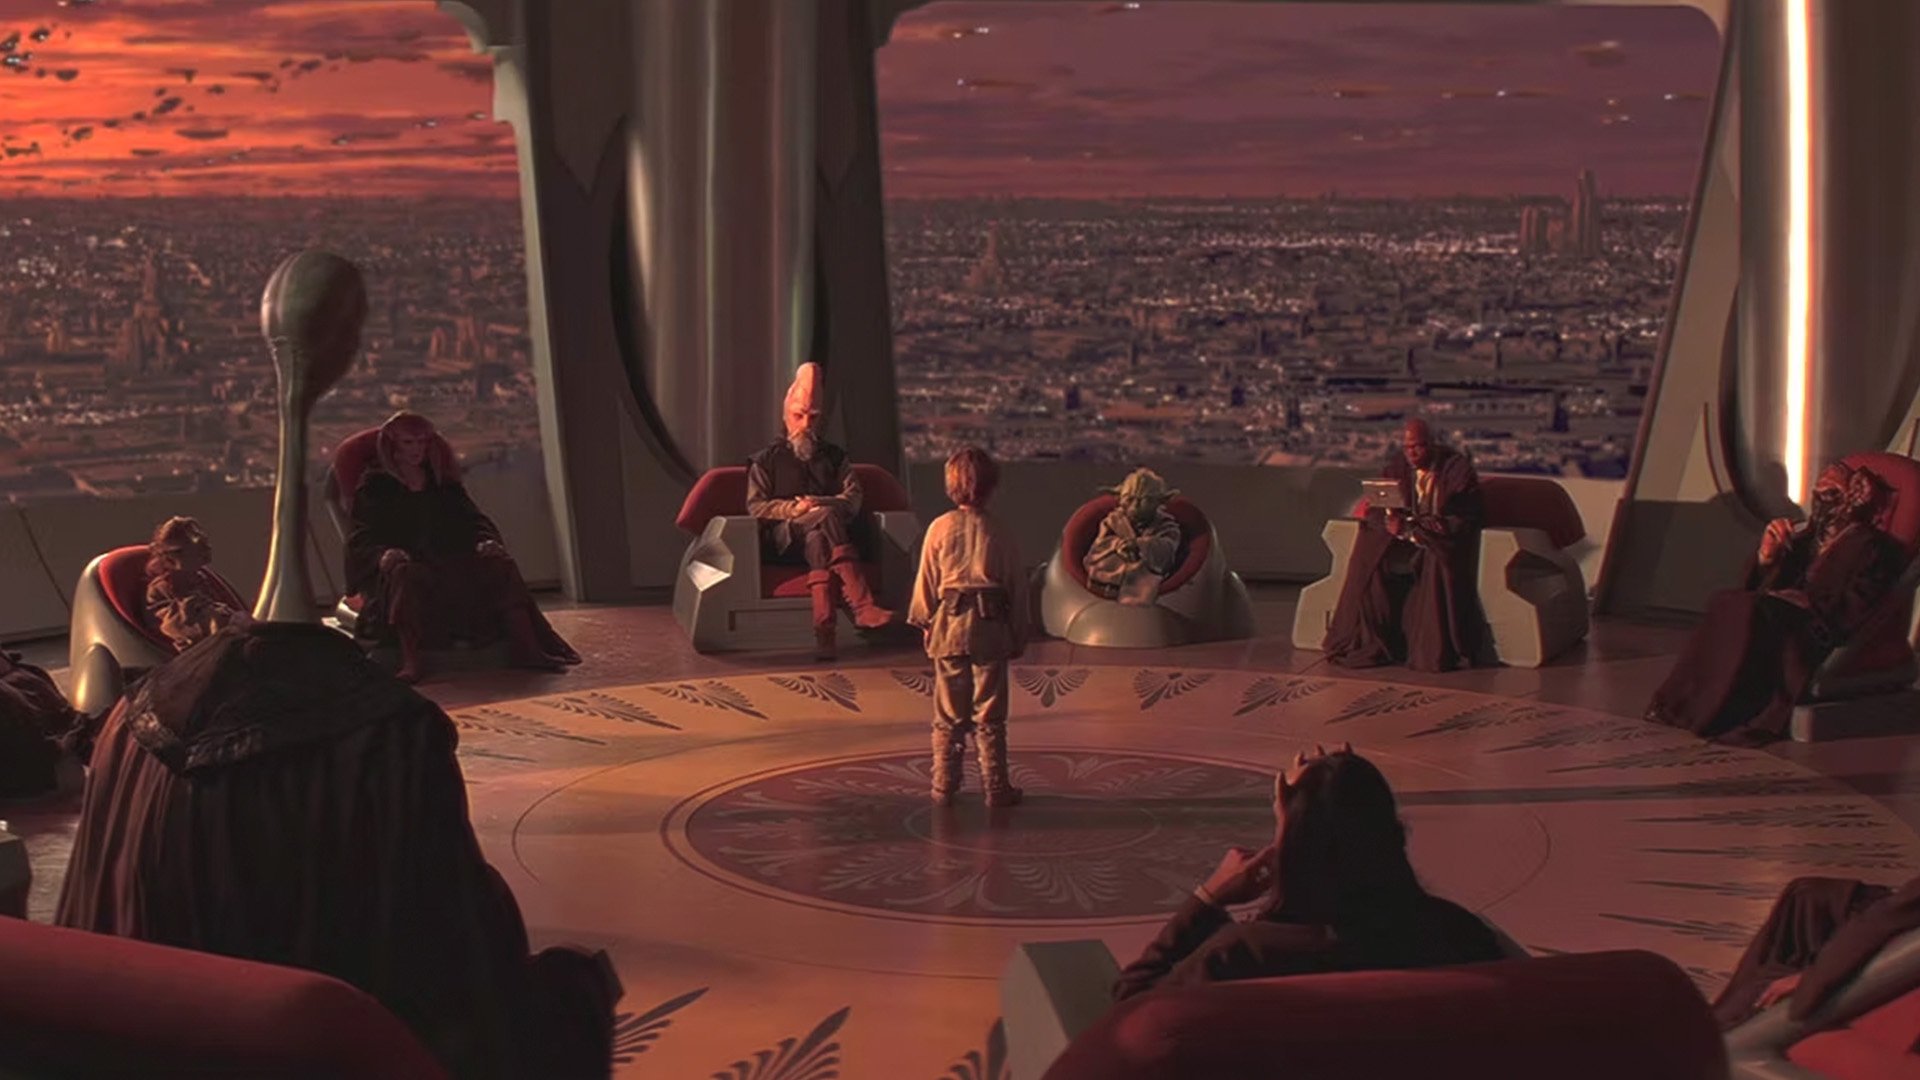 Os personagens são membros do Conselho Jedi